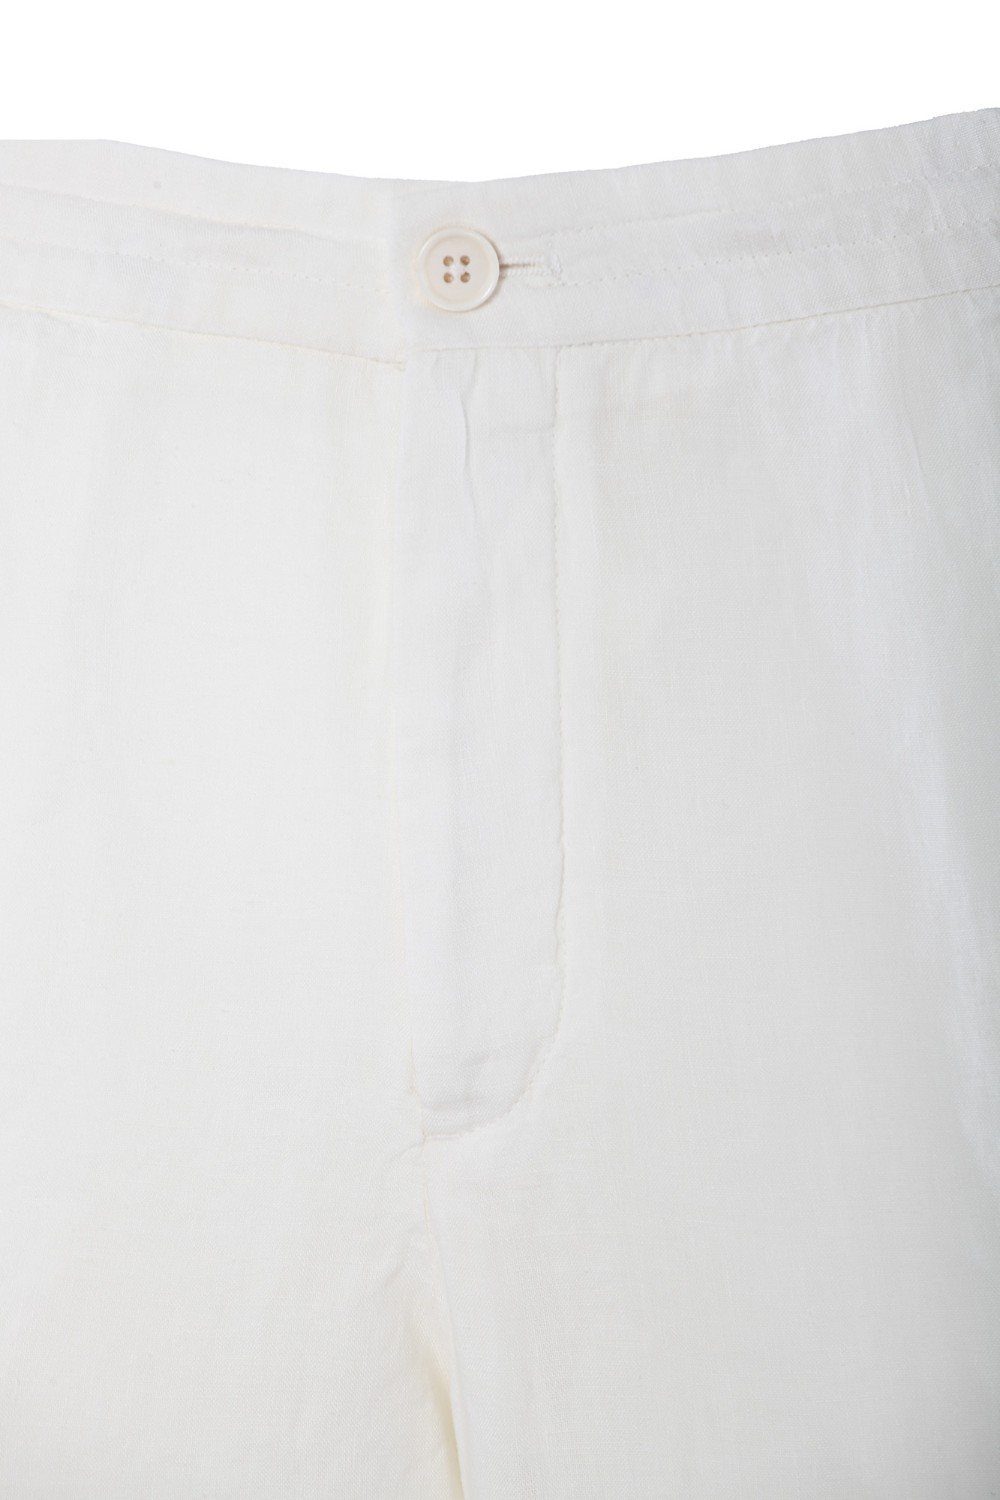 shop ZEGNA  Pantalone: Zegna pantaloni in lino.
Chiusura con zip e bottone.
Tasche laterali americane.
Tasche posteriori a filetto.
Composizione: 100% lino.
Made in Romania.. UDI32A7 TT11-N01 number 1569058